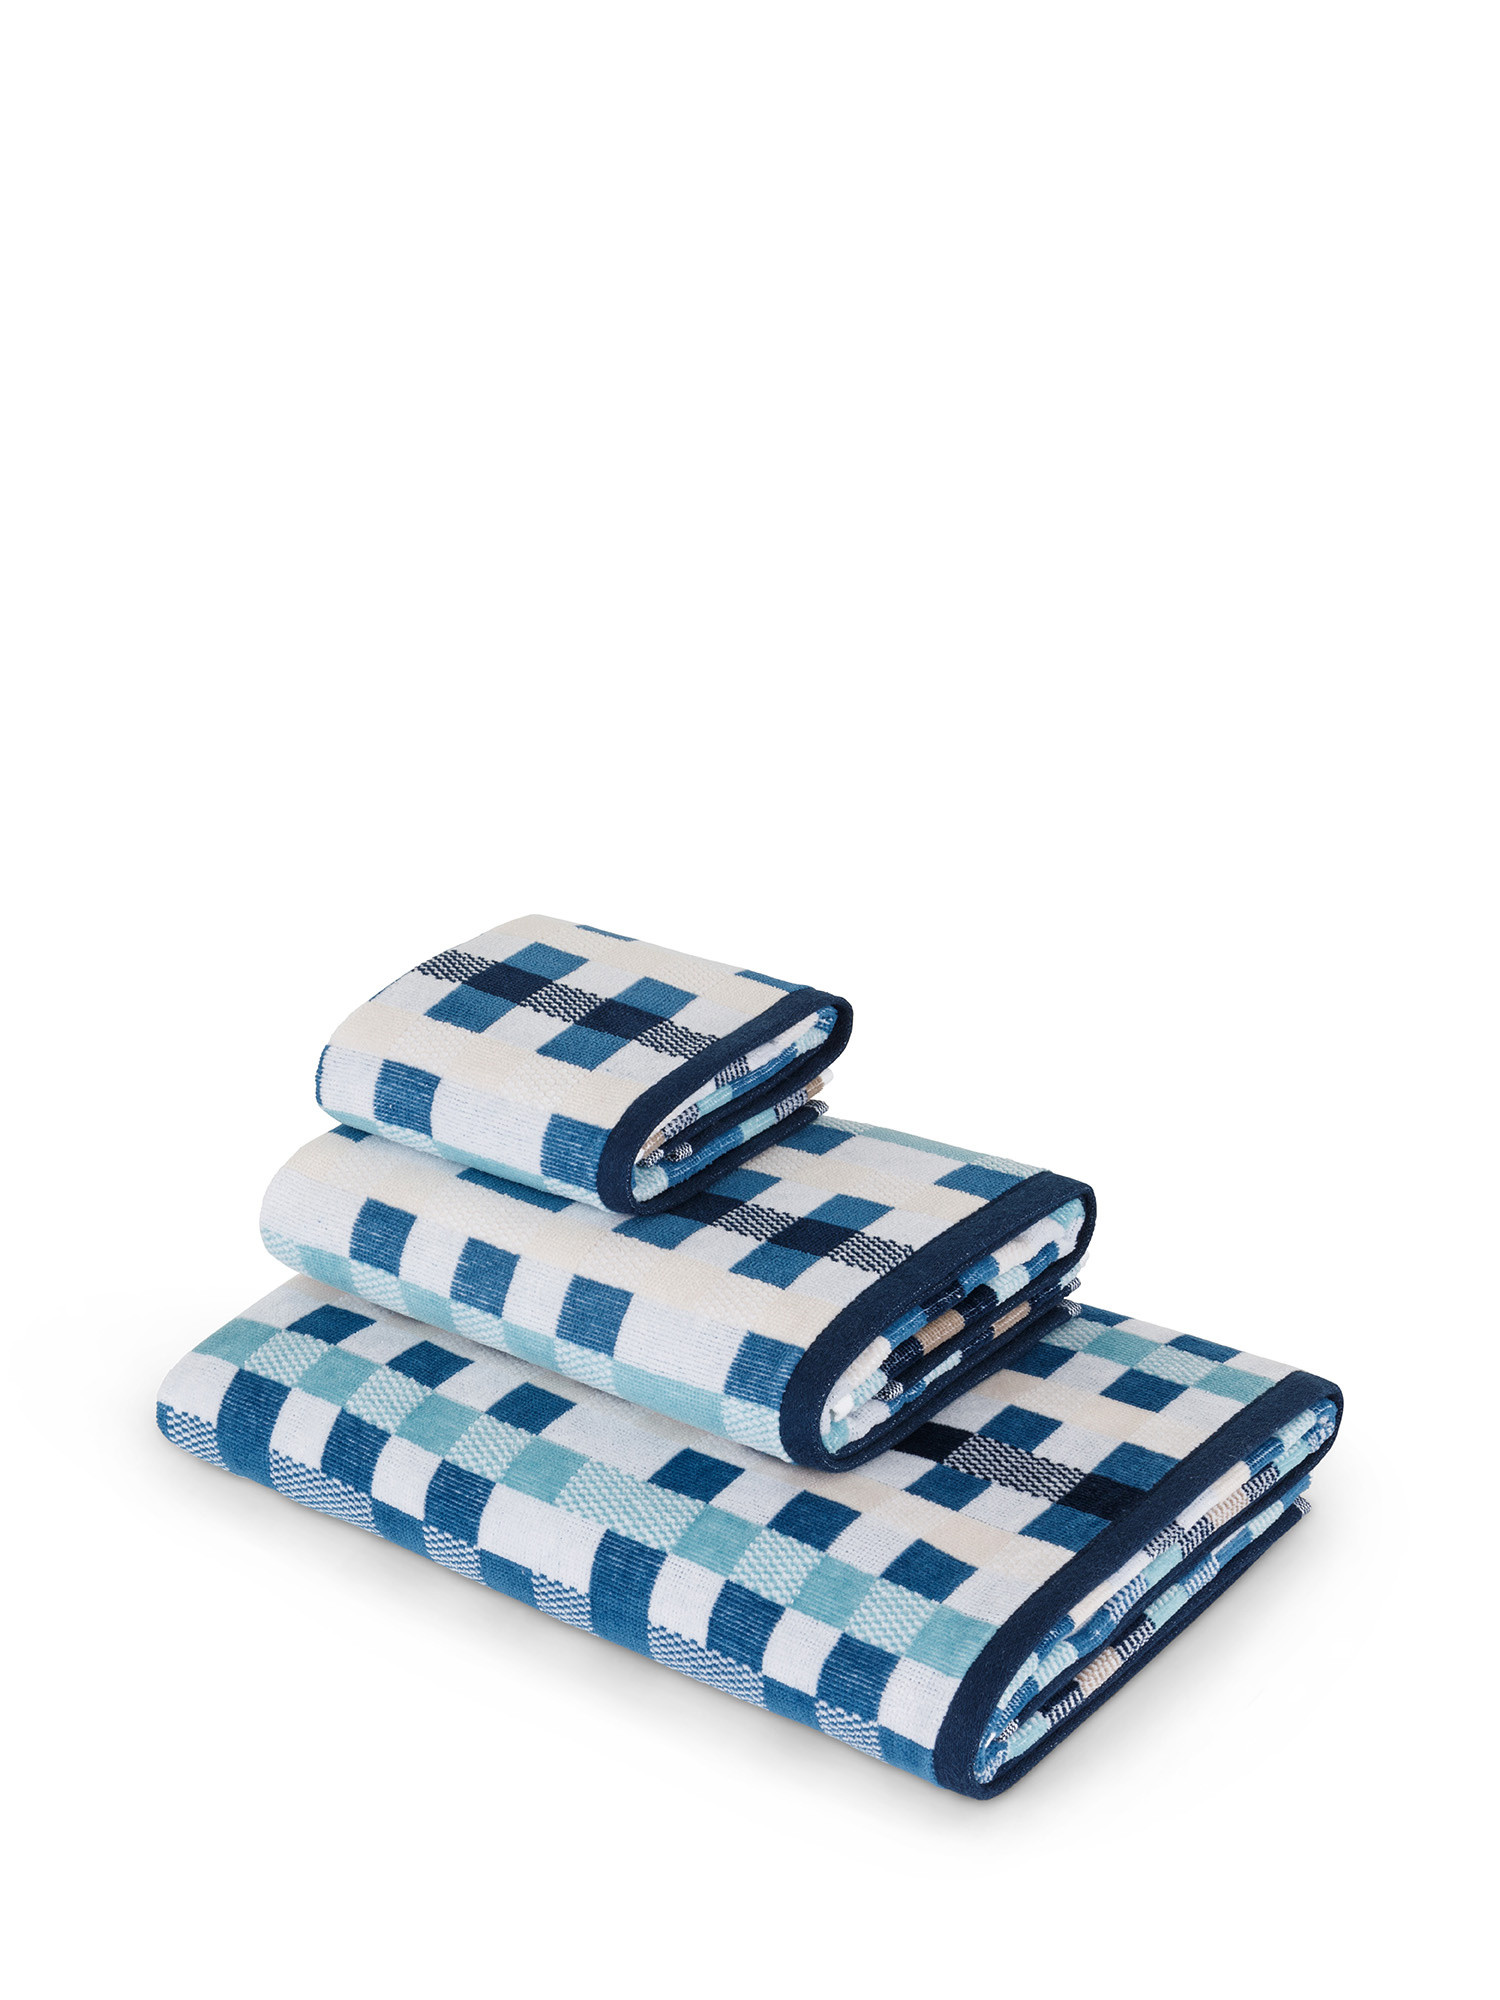 Asciugamano in velour di puro cotone tinto in filo con fantasia a quadri effetto mosaico, Blu, large image number 0